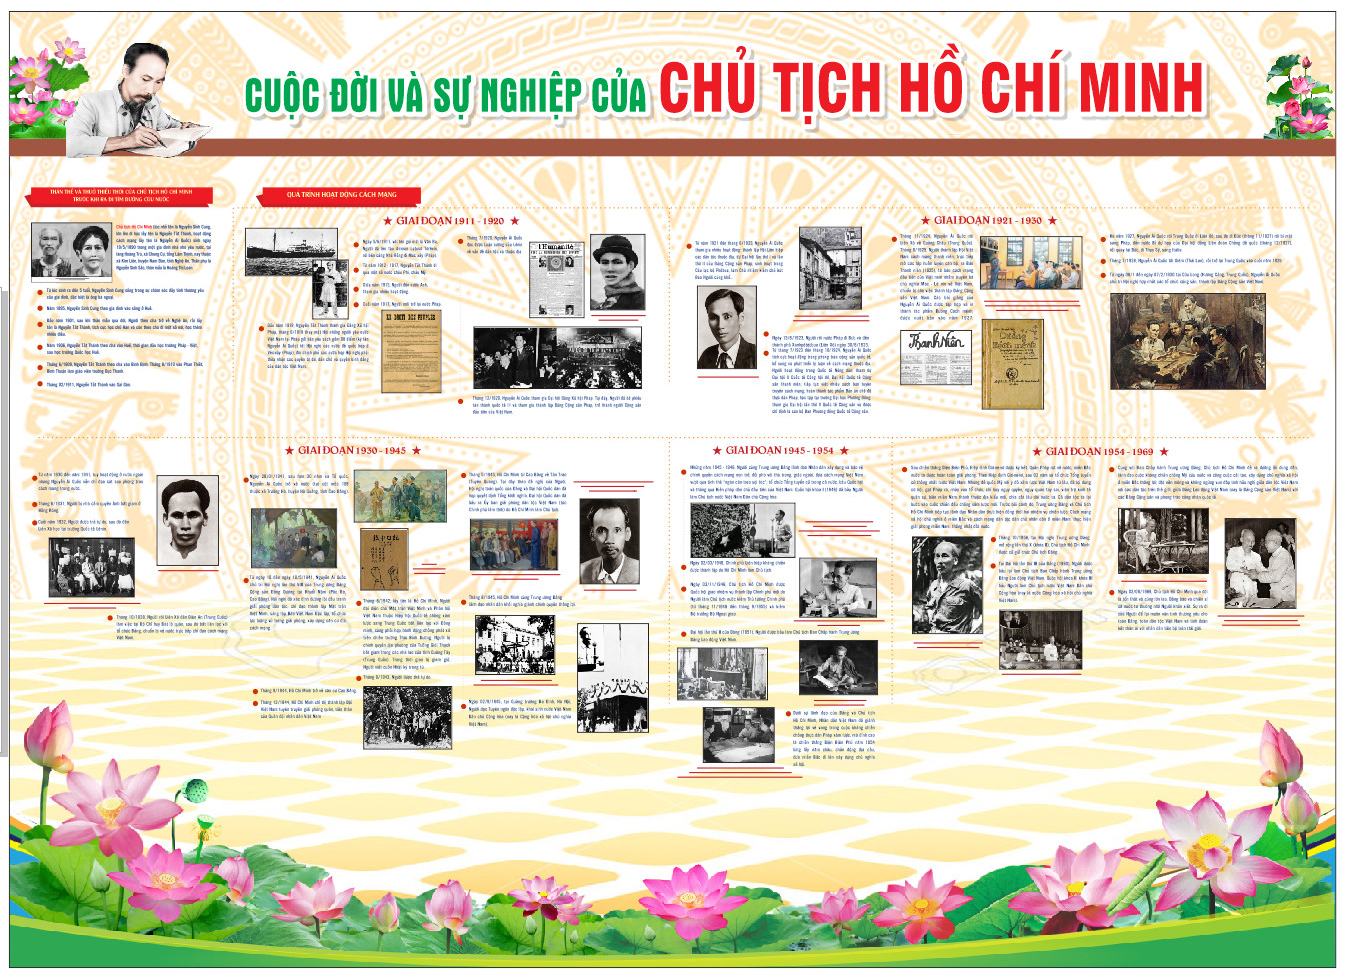 Cuộc đời và sự nghiệp của Chủ tịch Hồ Chí Minh